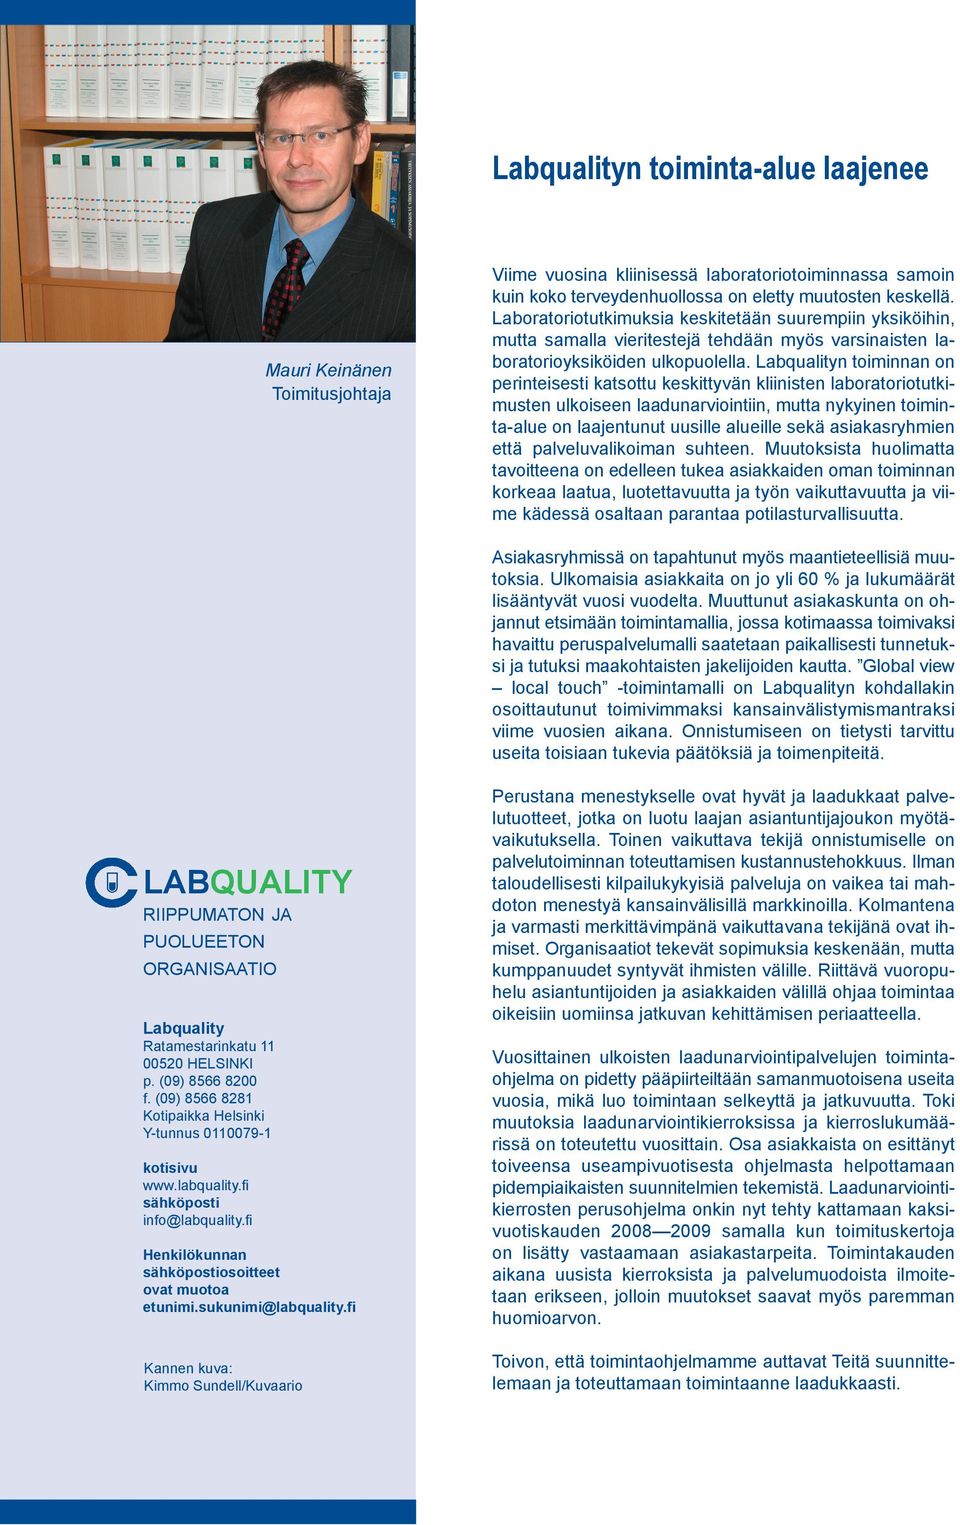 Labqualityn toiminnan on perinteisesti katsottu keskittyvän kliinisten laboratoriotutkimusten ulkoiseen laadunarviointiin, mutta nykyinen toiminta-alue on laajentunut uusille alueille sekä